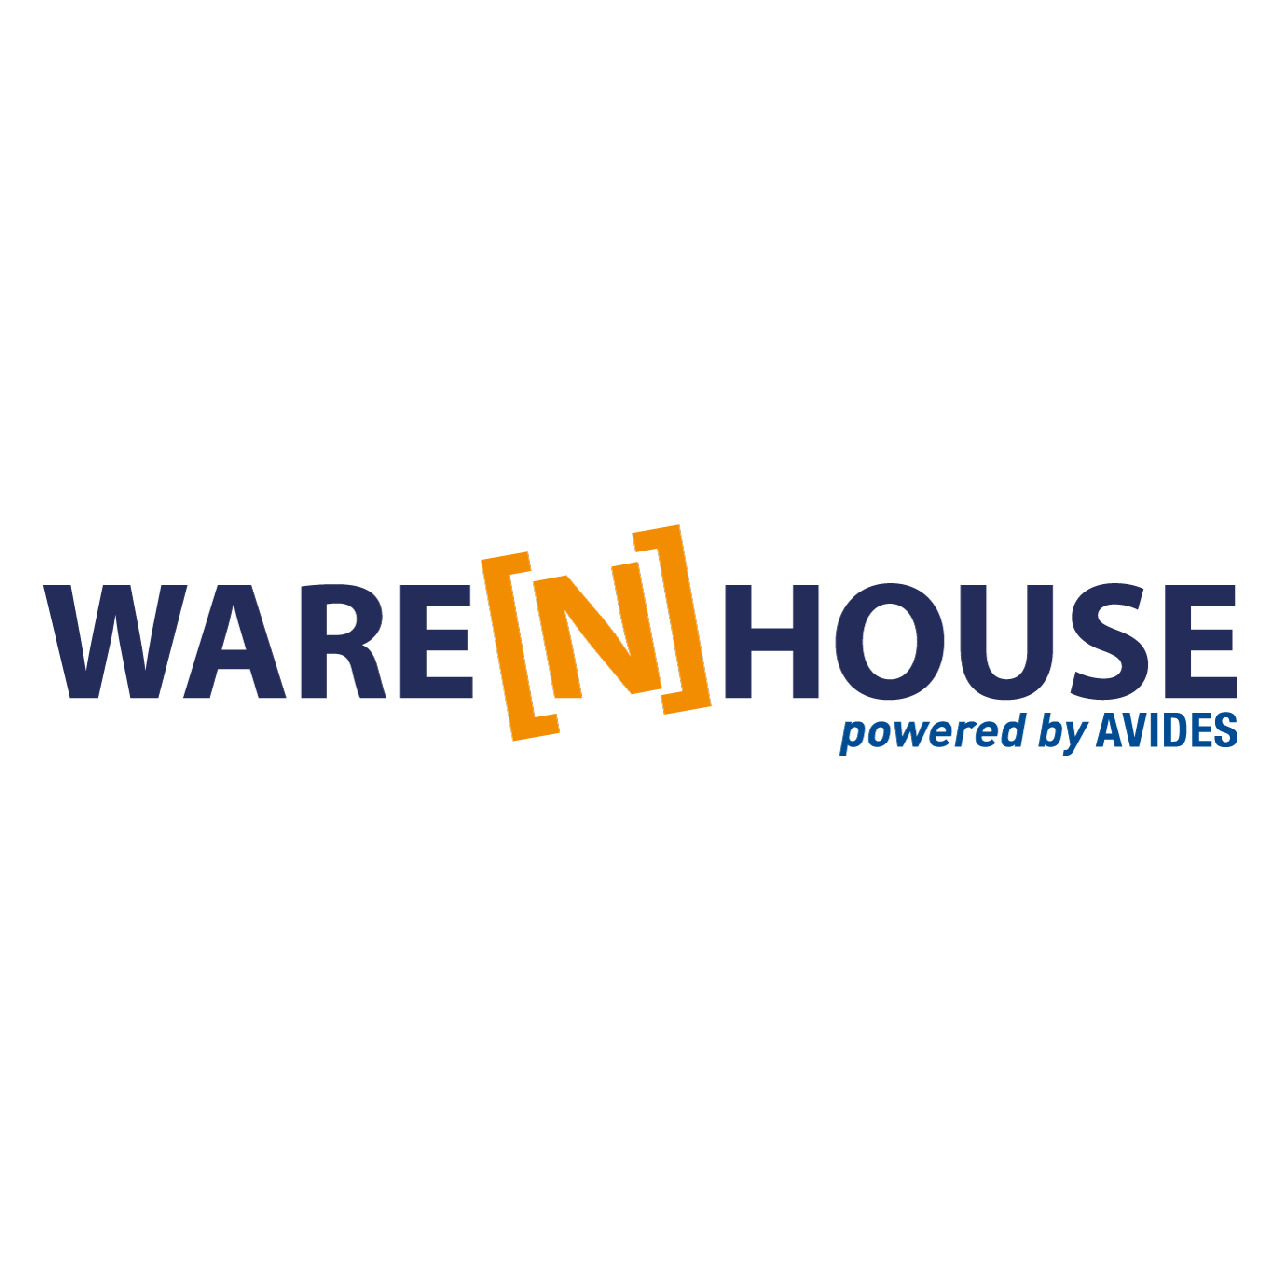 Warenhouse Logo